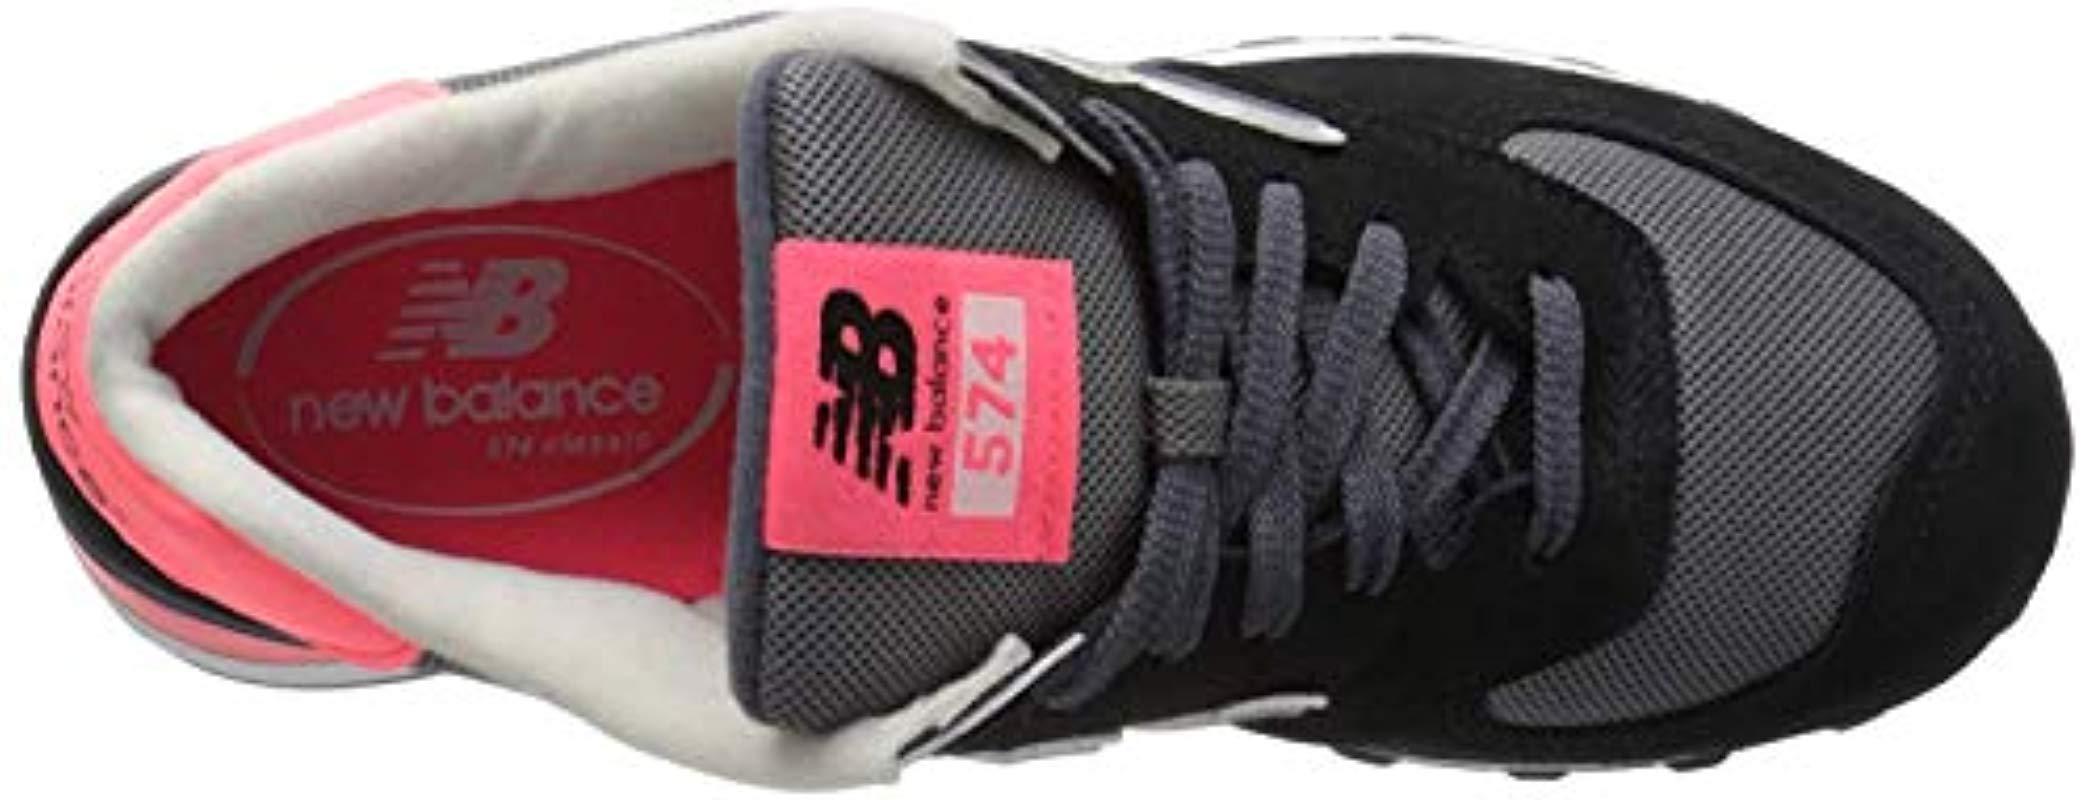 Wl574 Core Plus-w Lifestyle Sneaker 